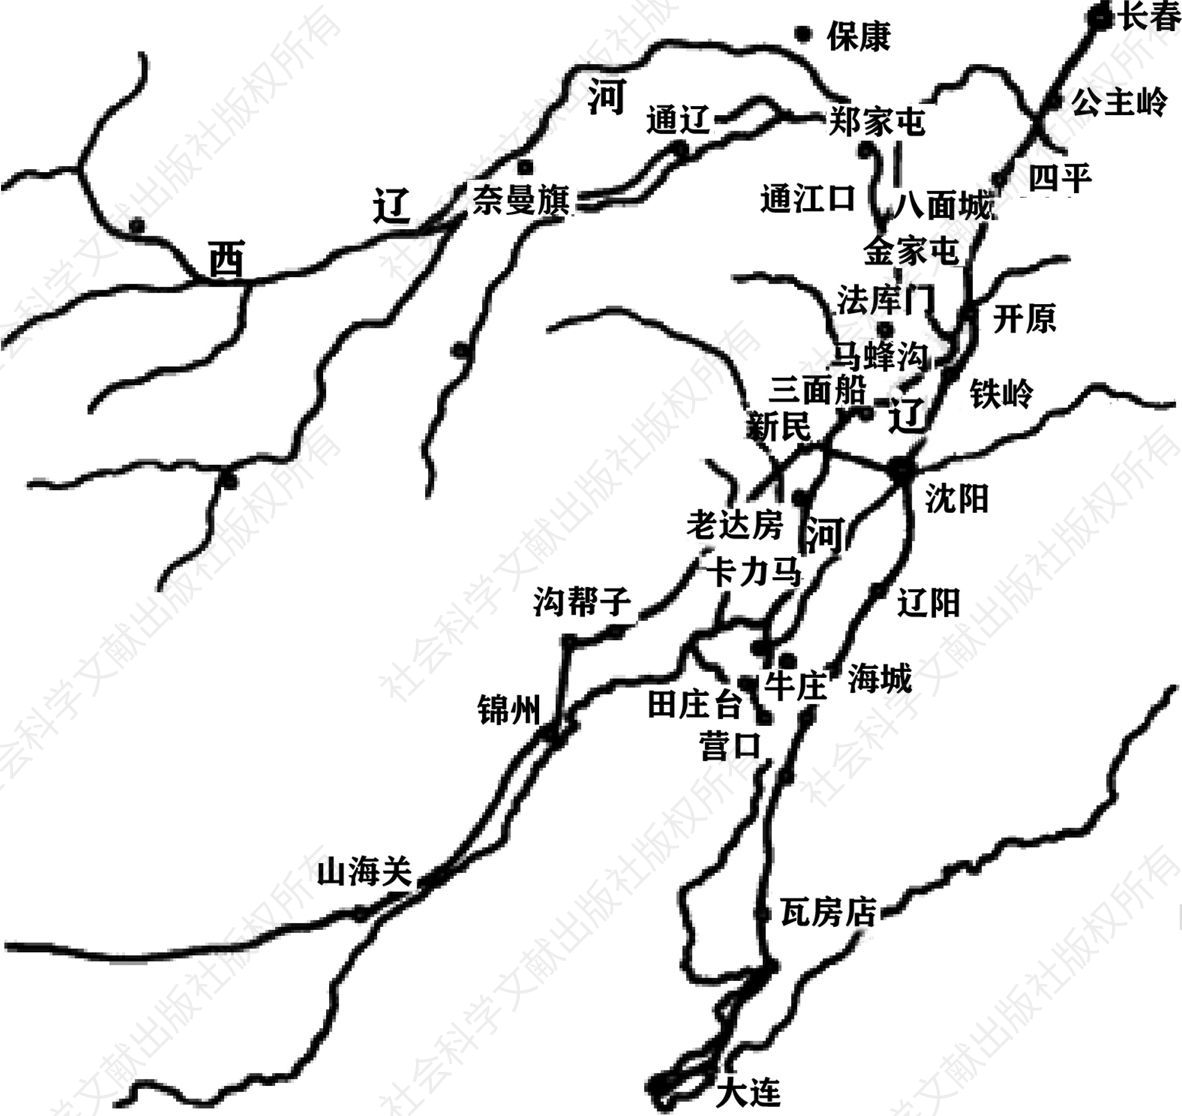 图3 19世纪下半叶辽河流域城镇分布